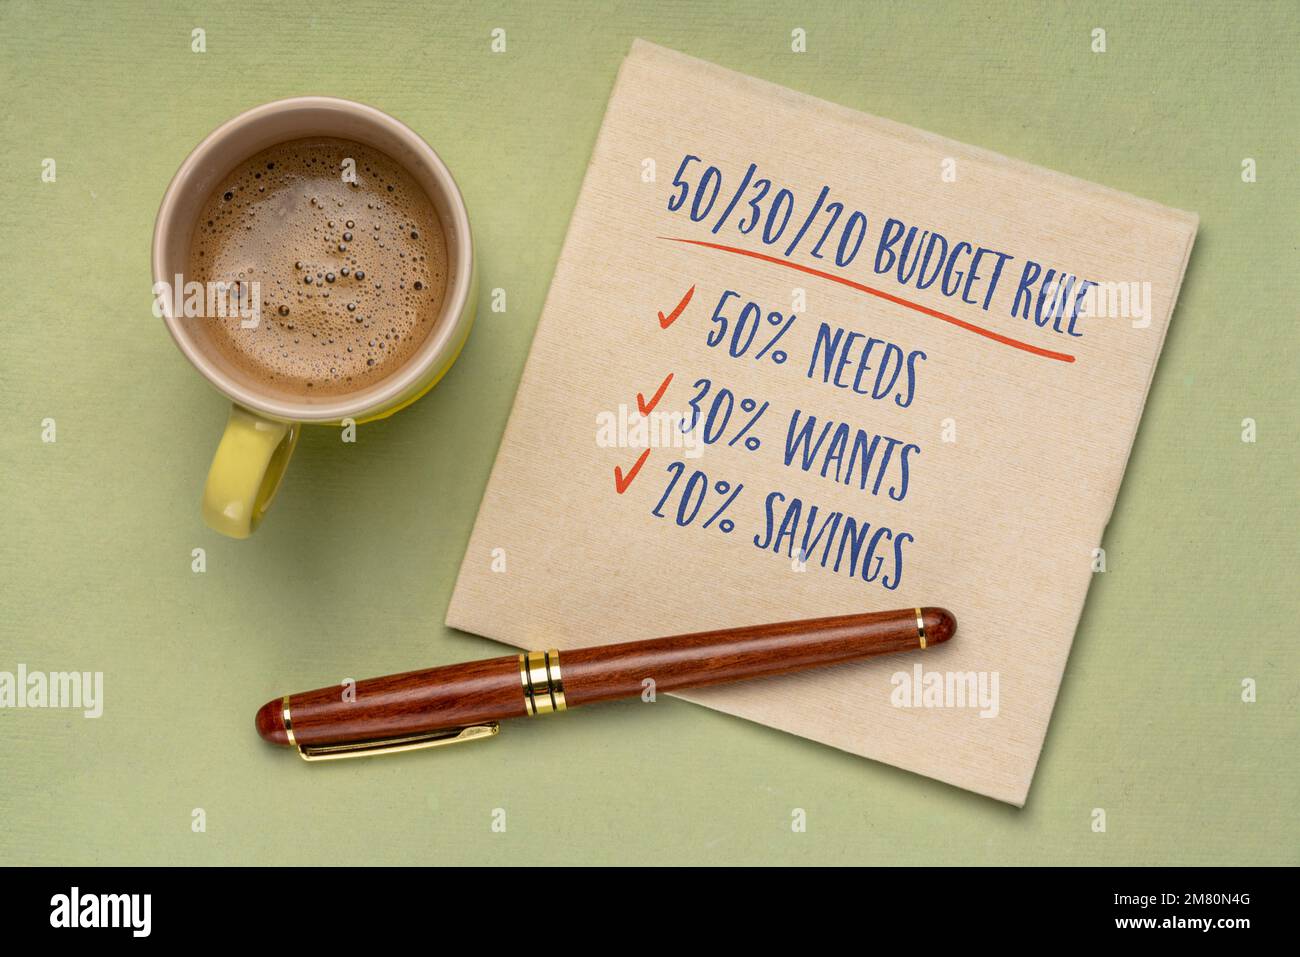 Budgetregel oder Ratschlag: 50 % Bedarf, 30 % Wünsche und 20 % Ersparnis, Handschrift auf einer Serviette mit einer Tasse Kaffee, persönliches Finanzierungskonzept Stockfoto